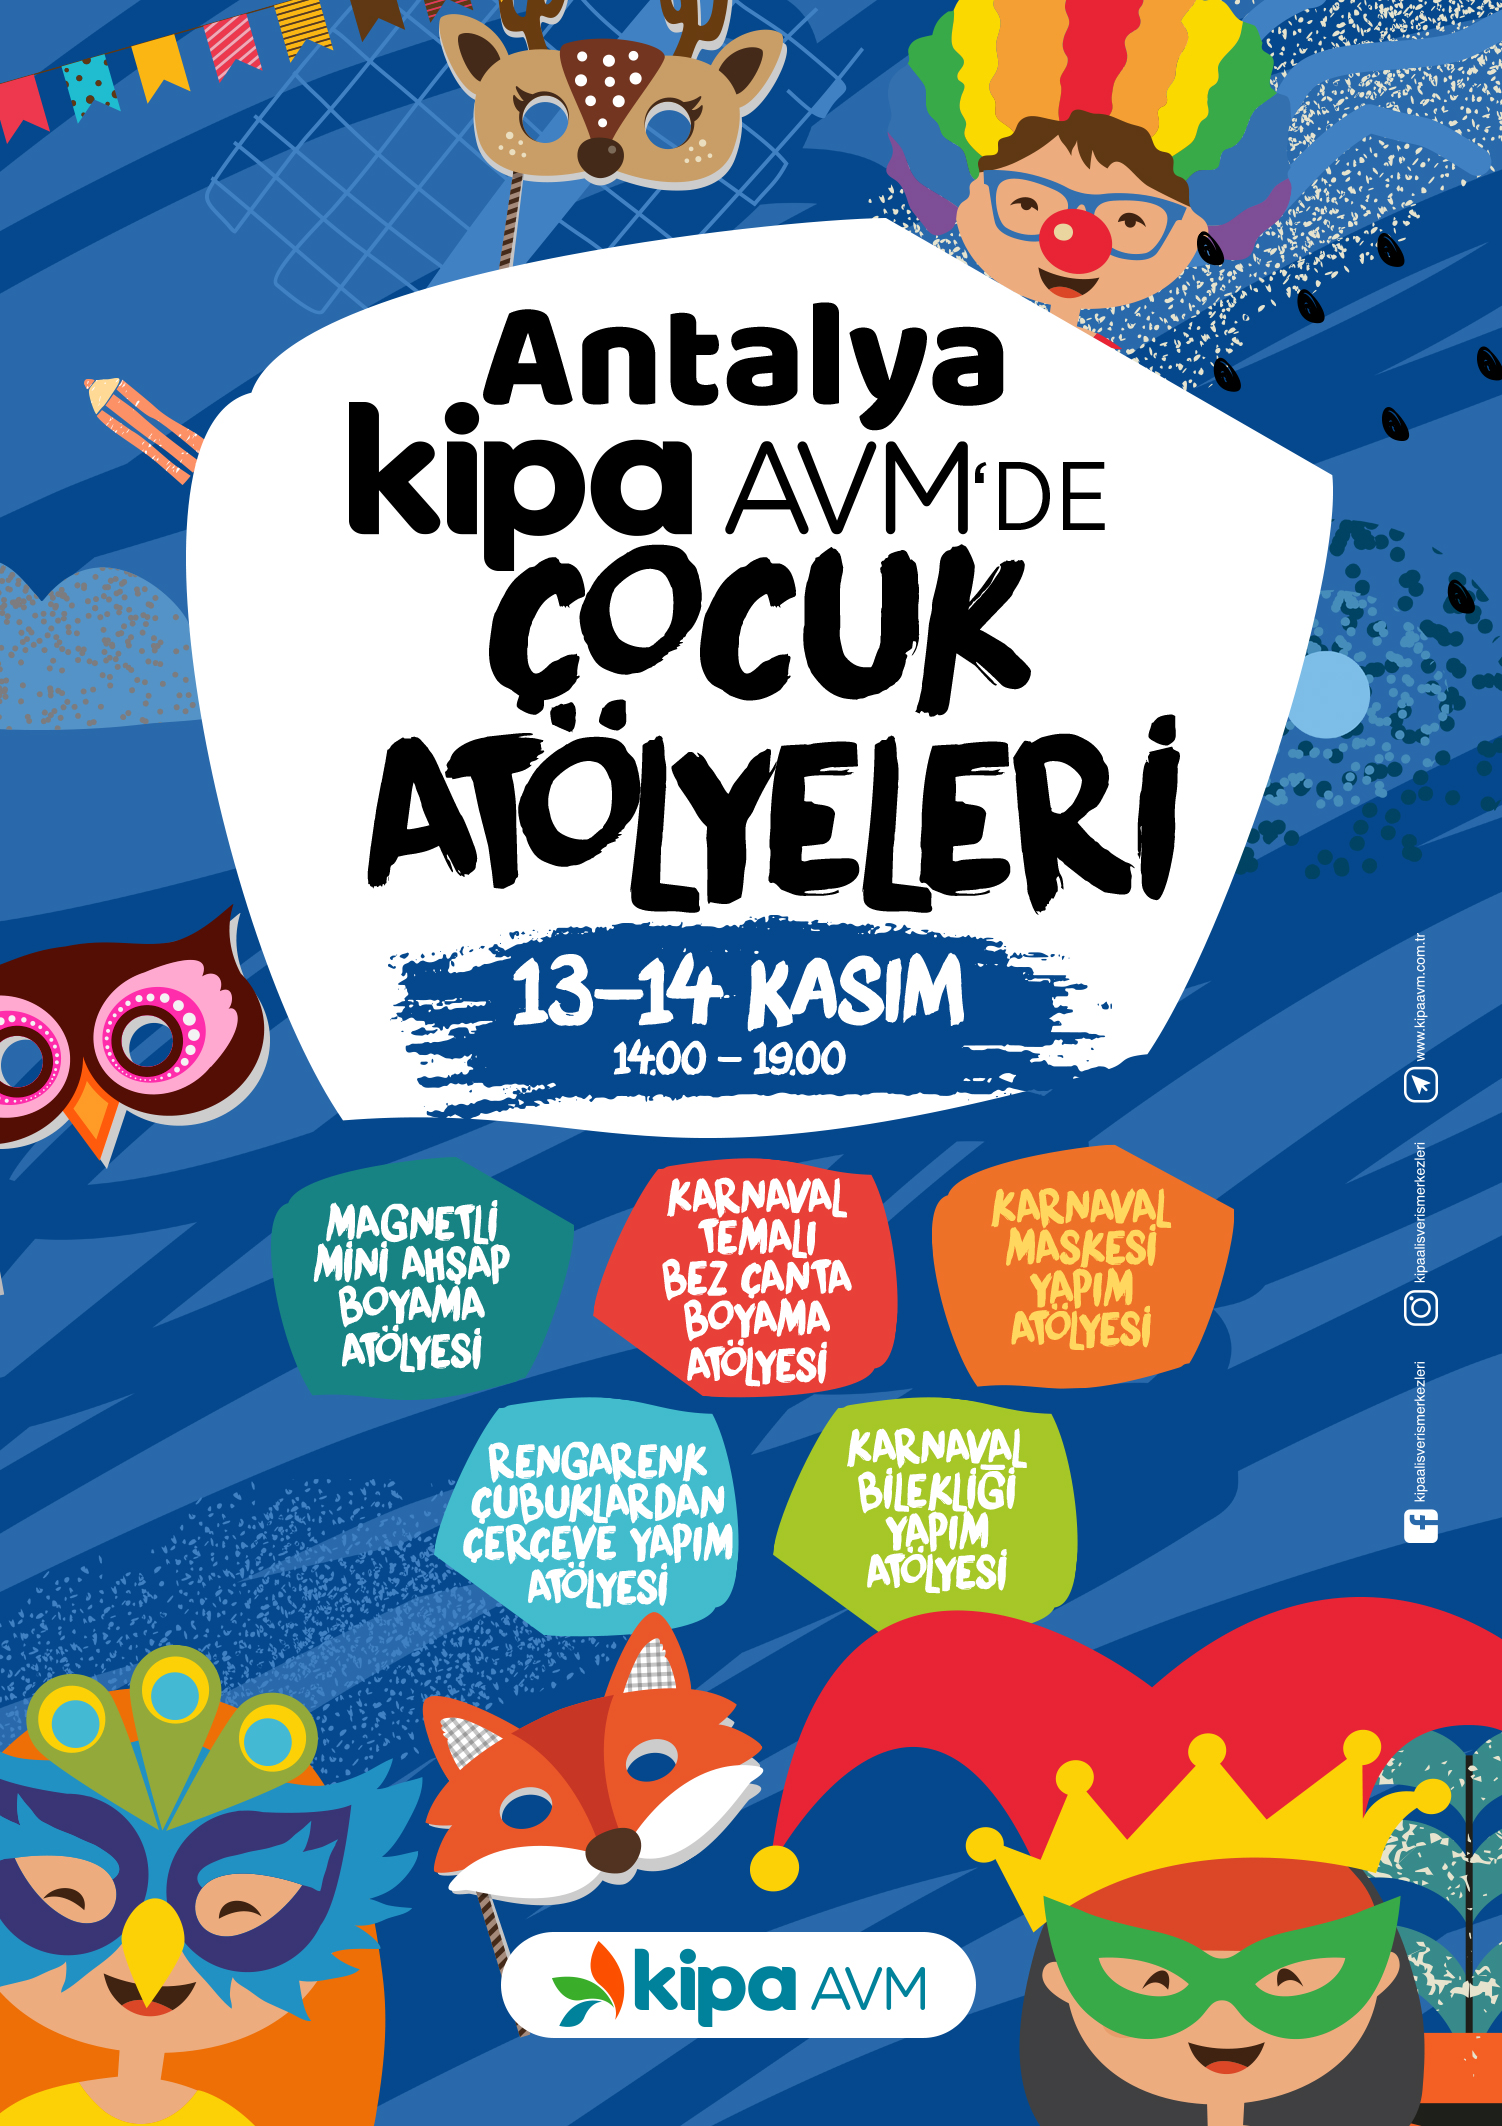 Antalya Kipa AVM'de Çocuk Atölyeleri!
